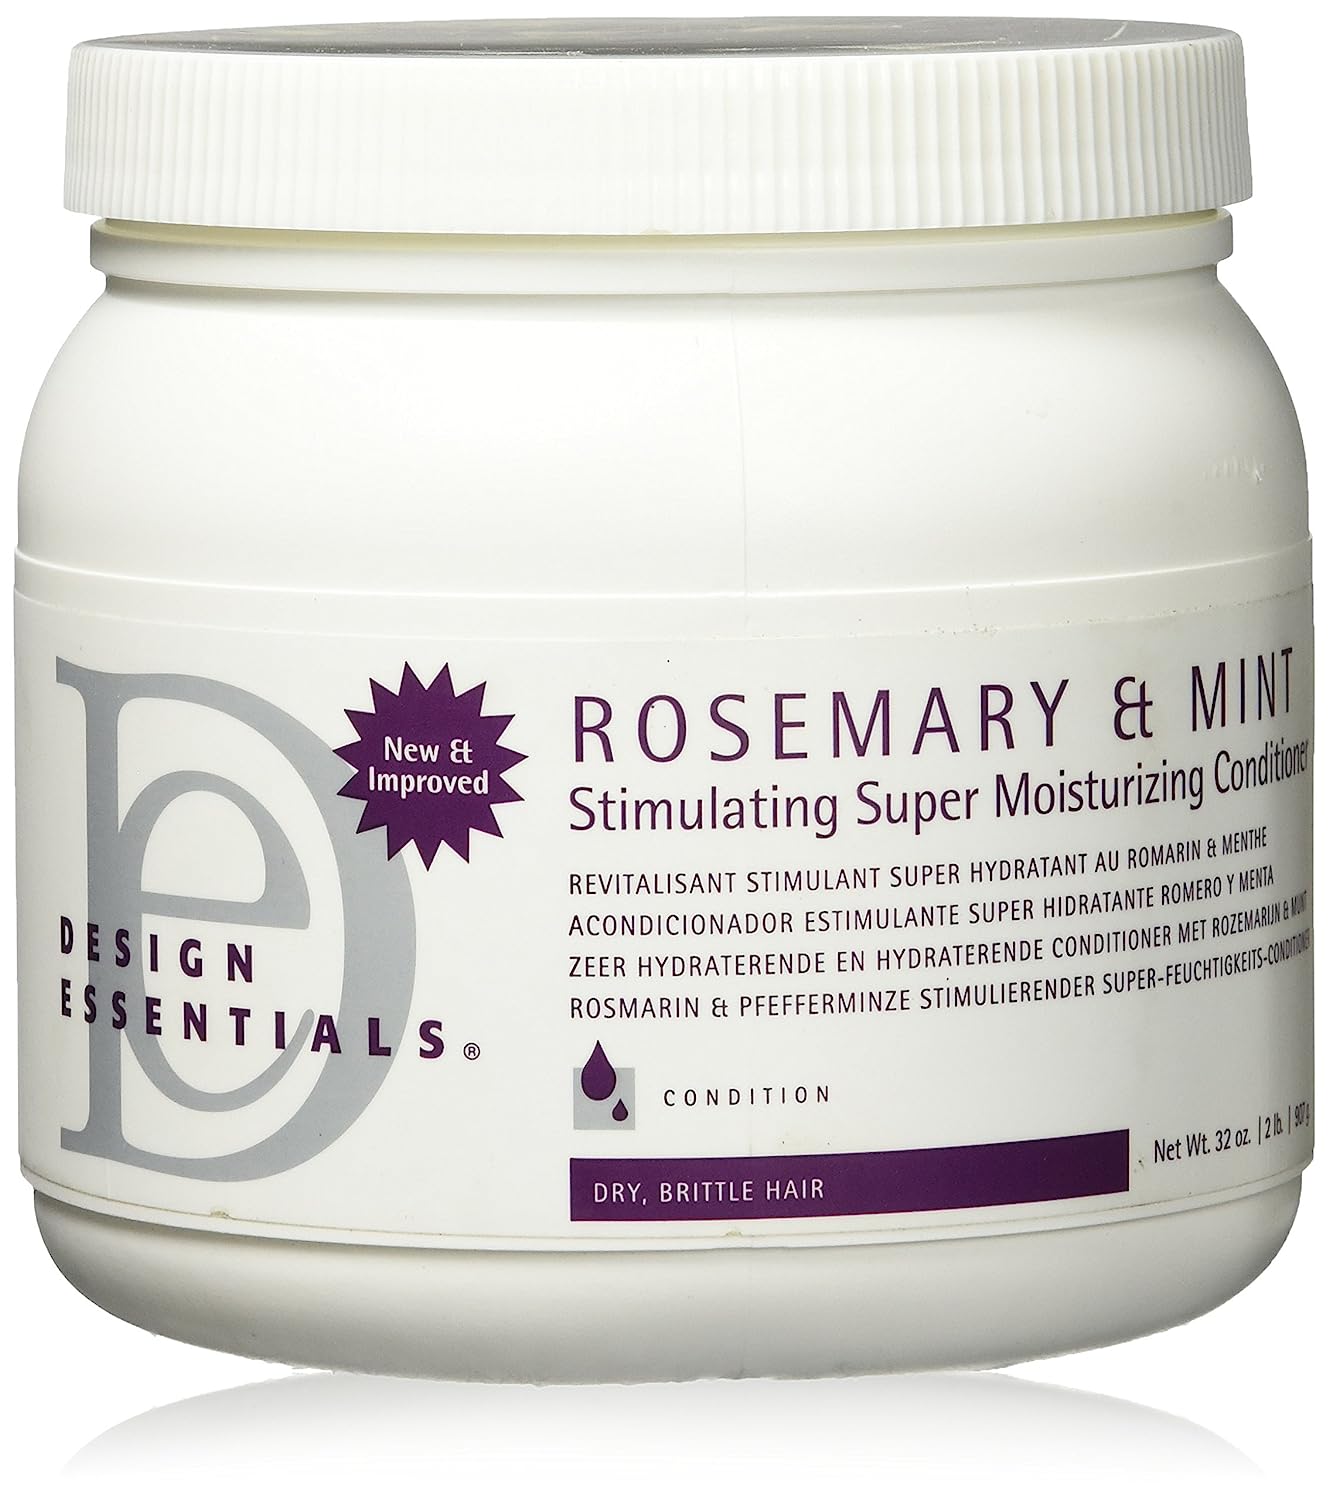 Design Essentials Rosemary & Mint Stimulating Super [...]